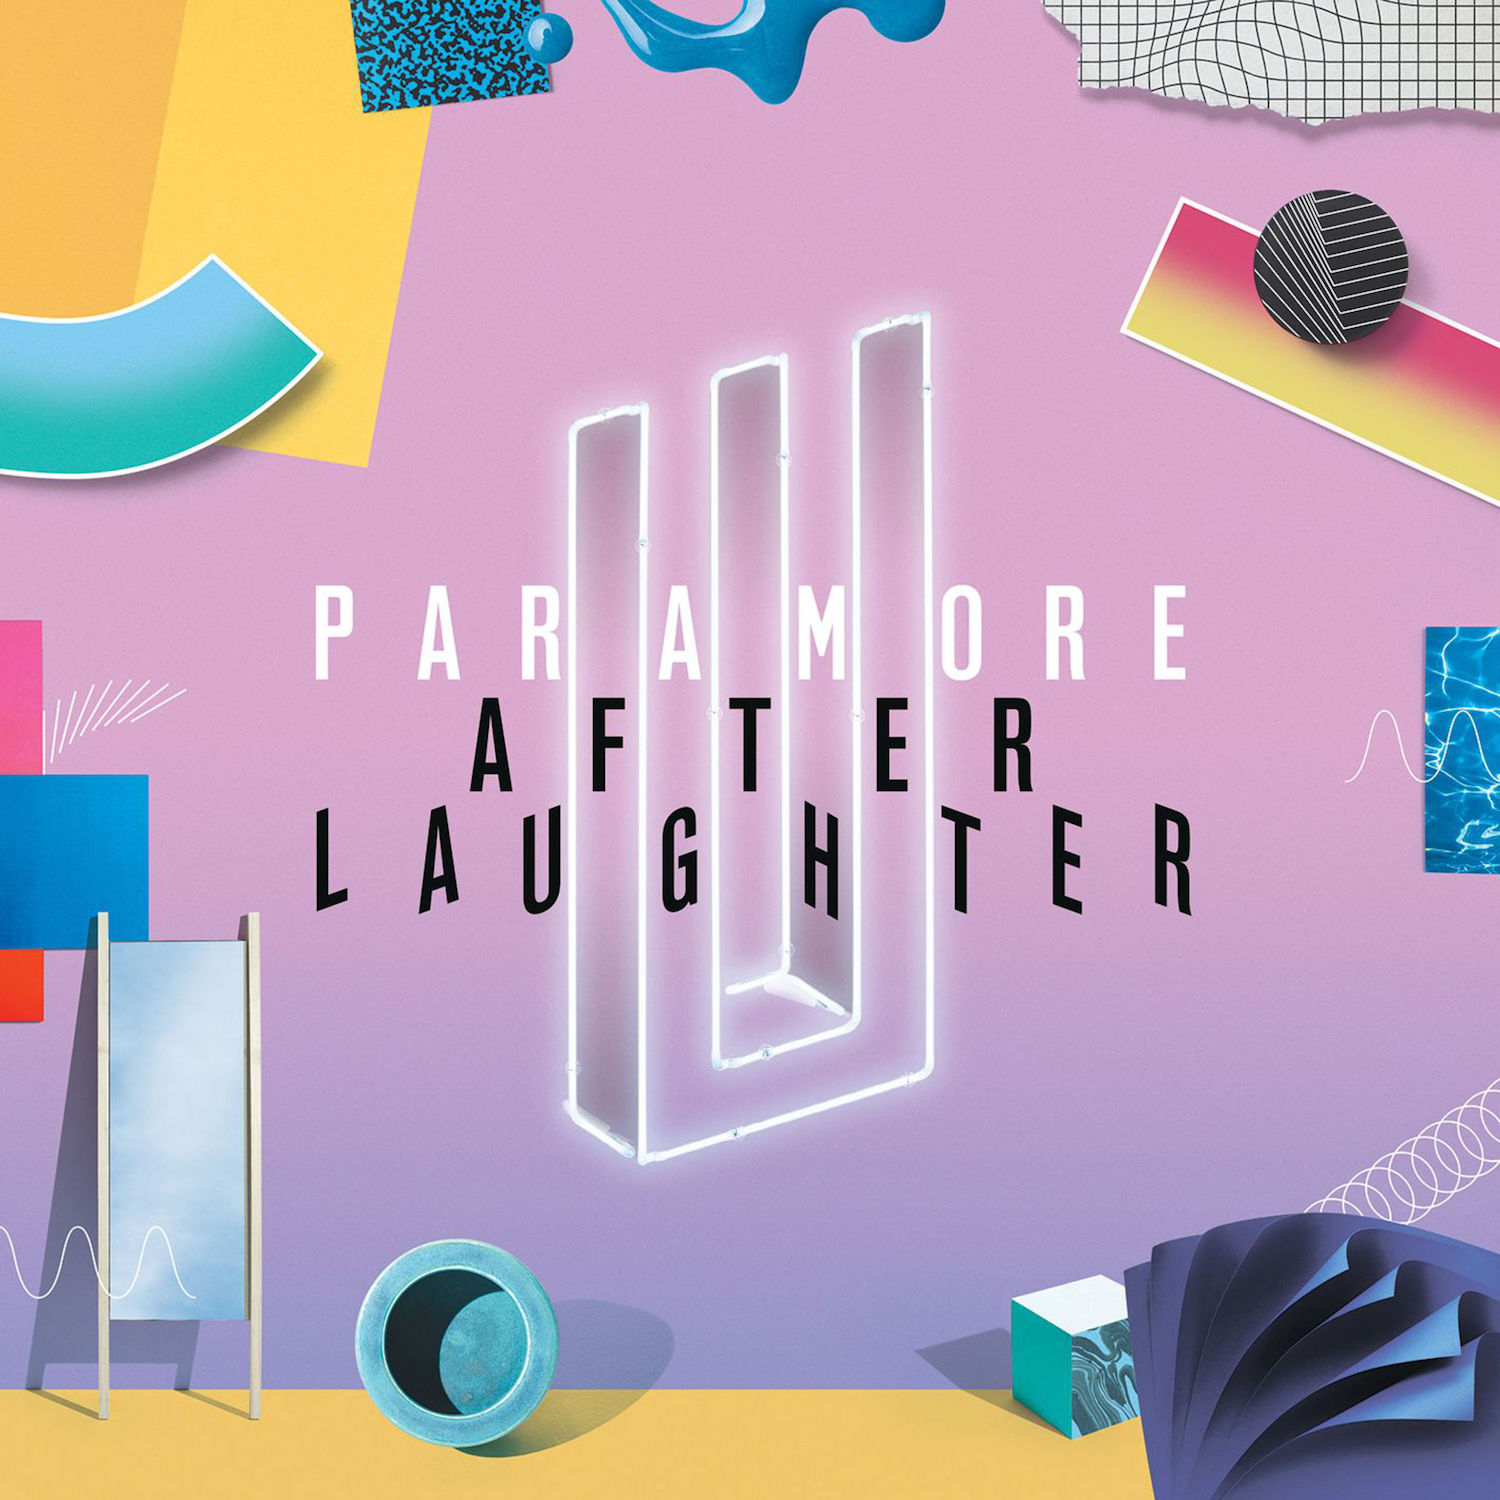 Artists reinterpret Paramore's recent album in refreshing ways on